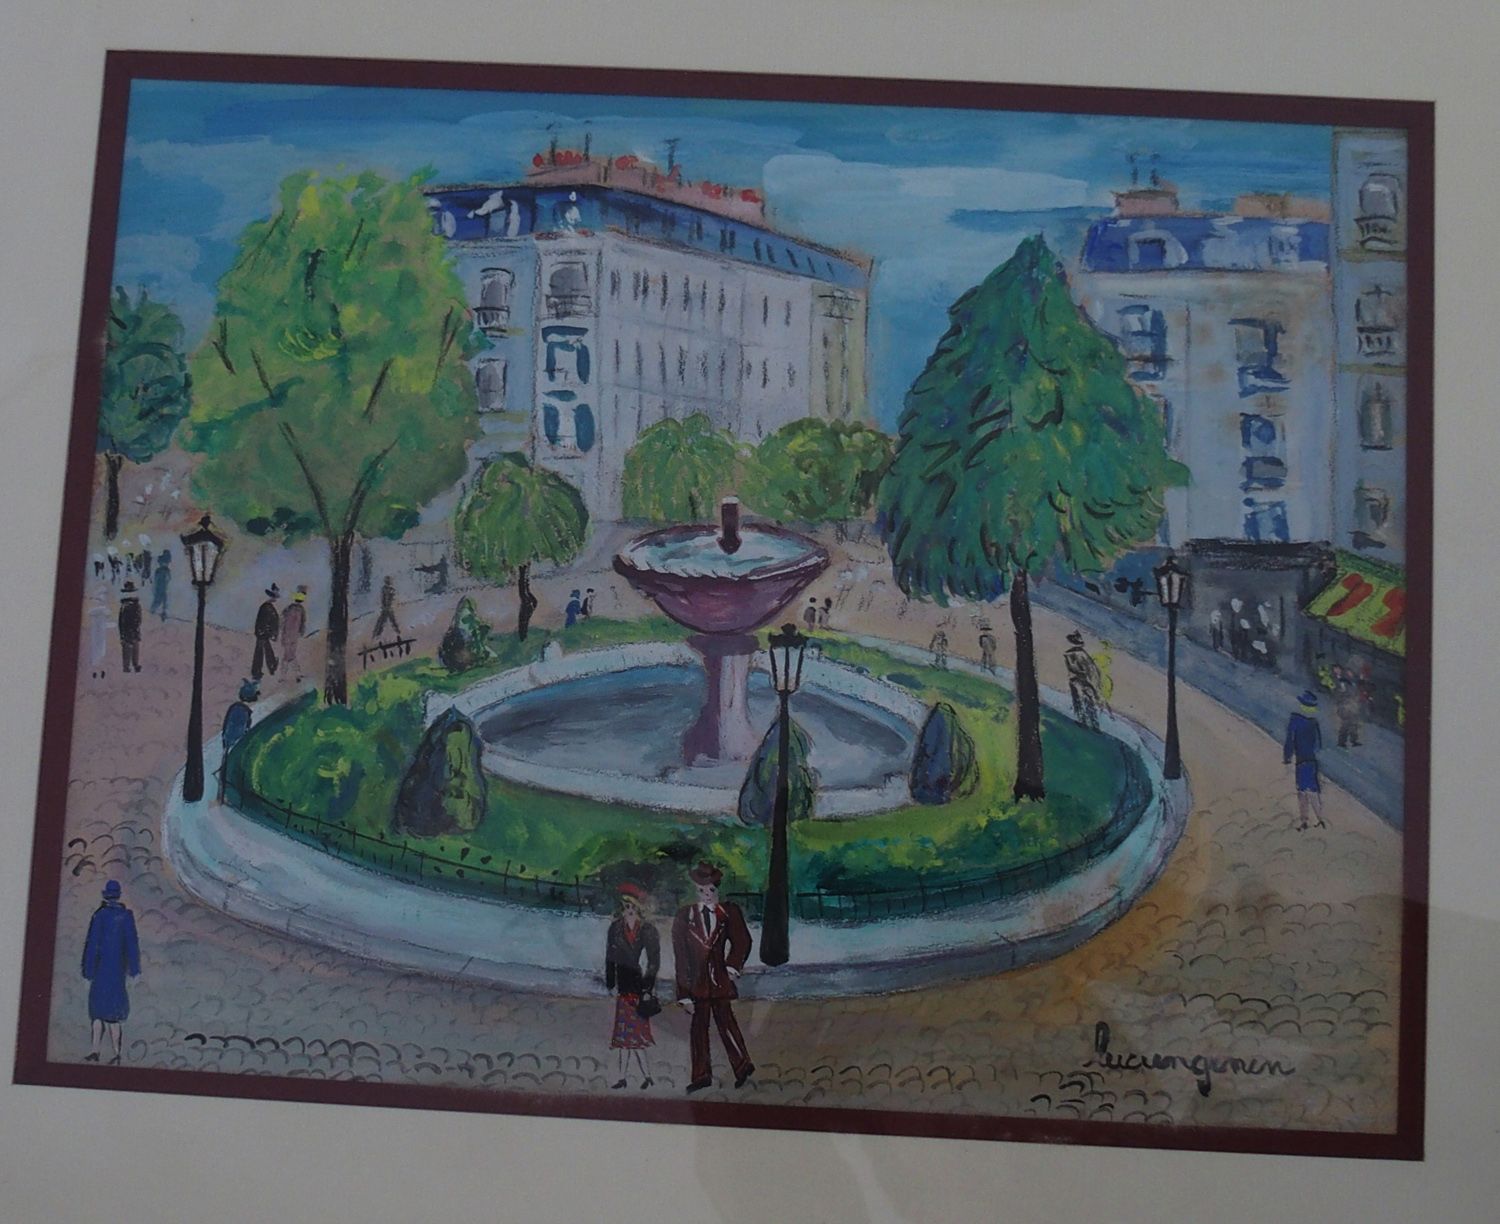 Null 现代学校：皮加尔广场

水粉画，右下角有一个天启的签名。

23 x 30 cm at sight